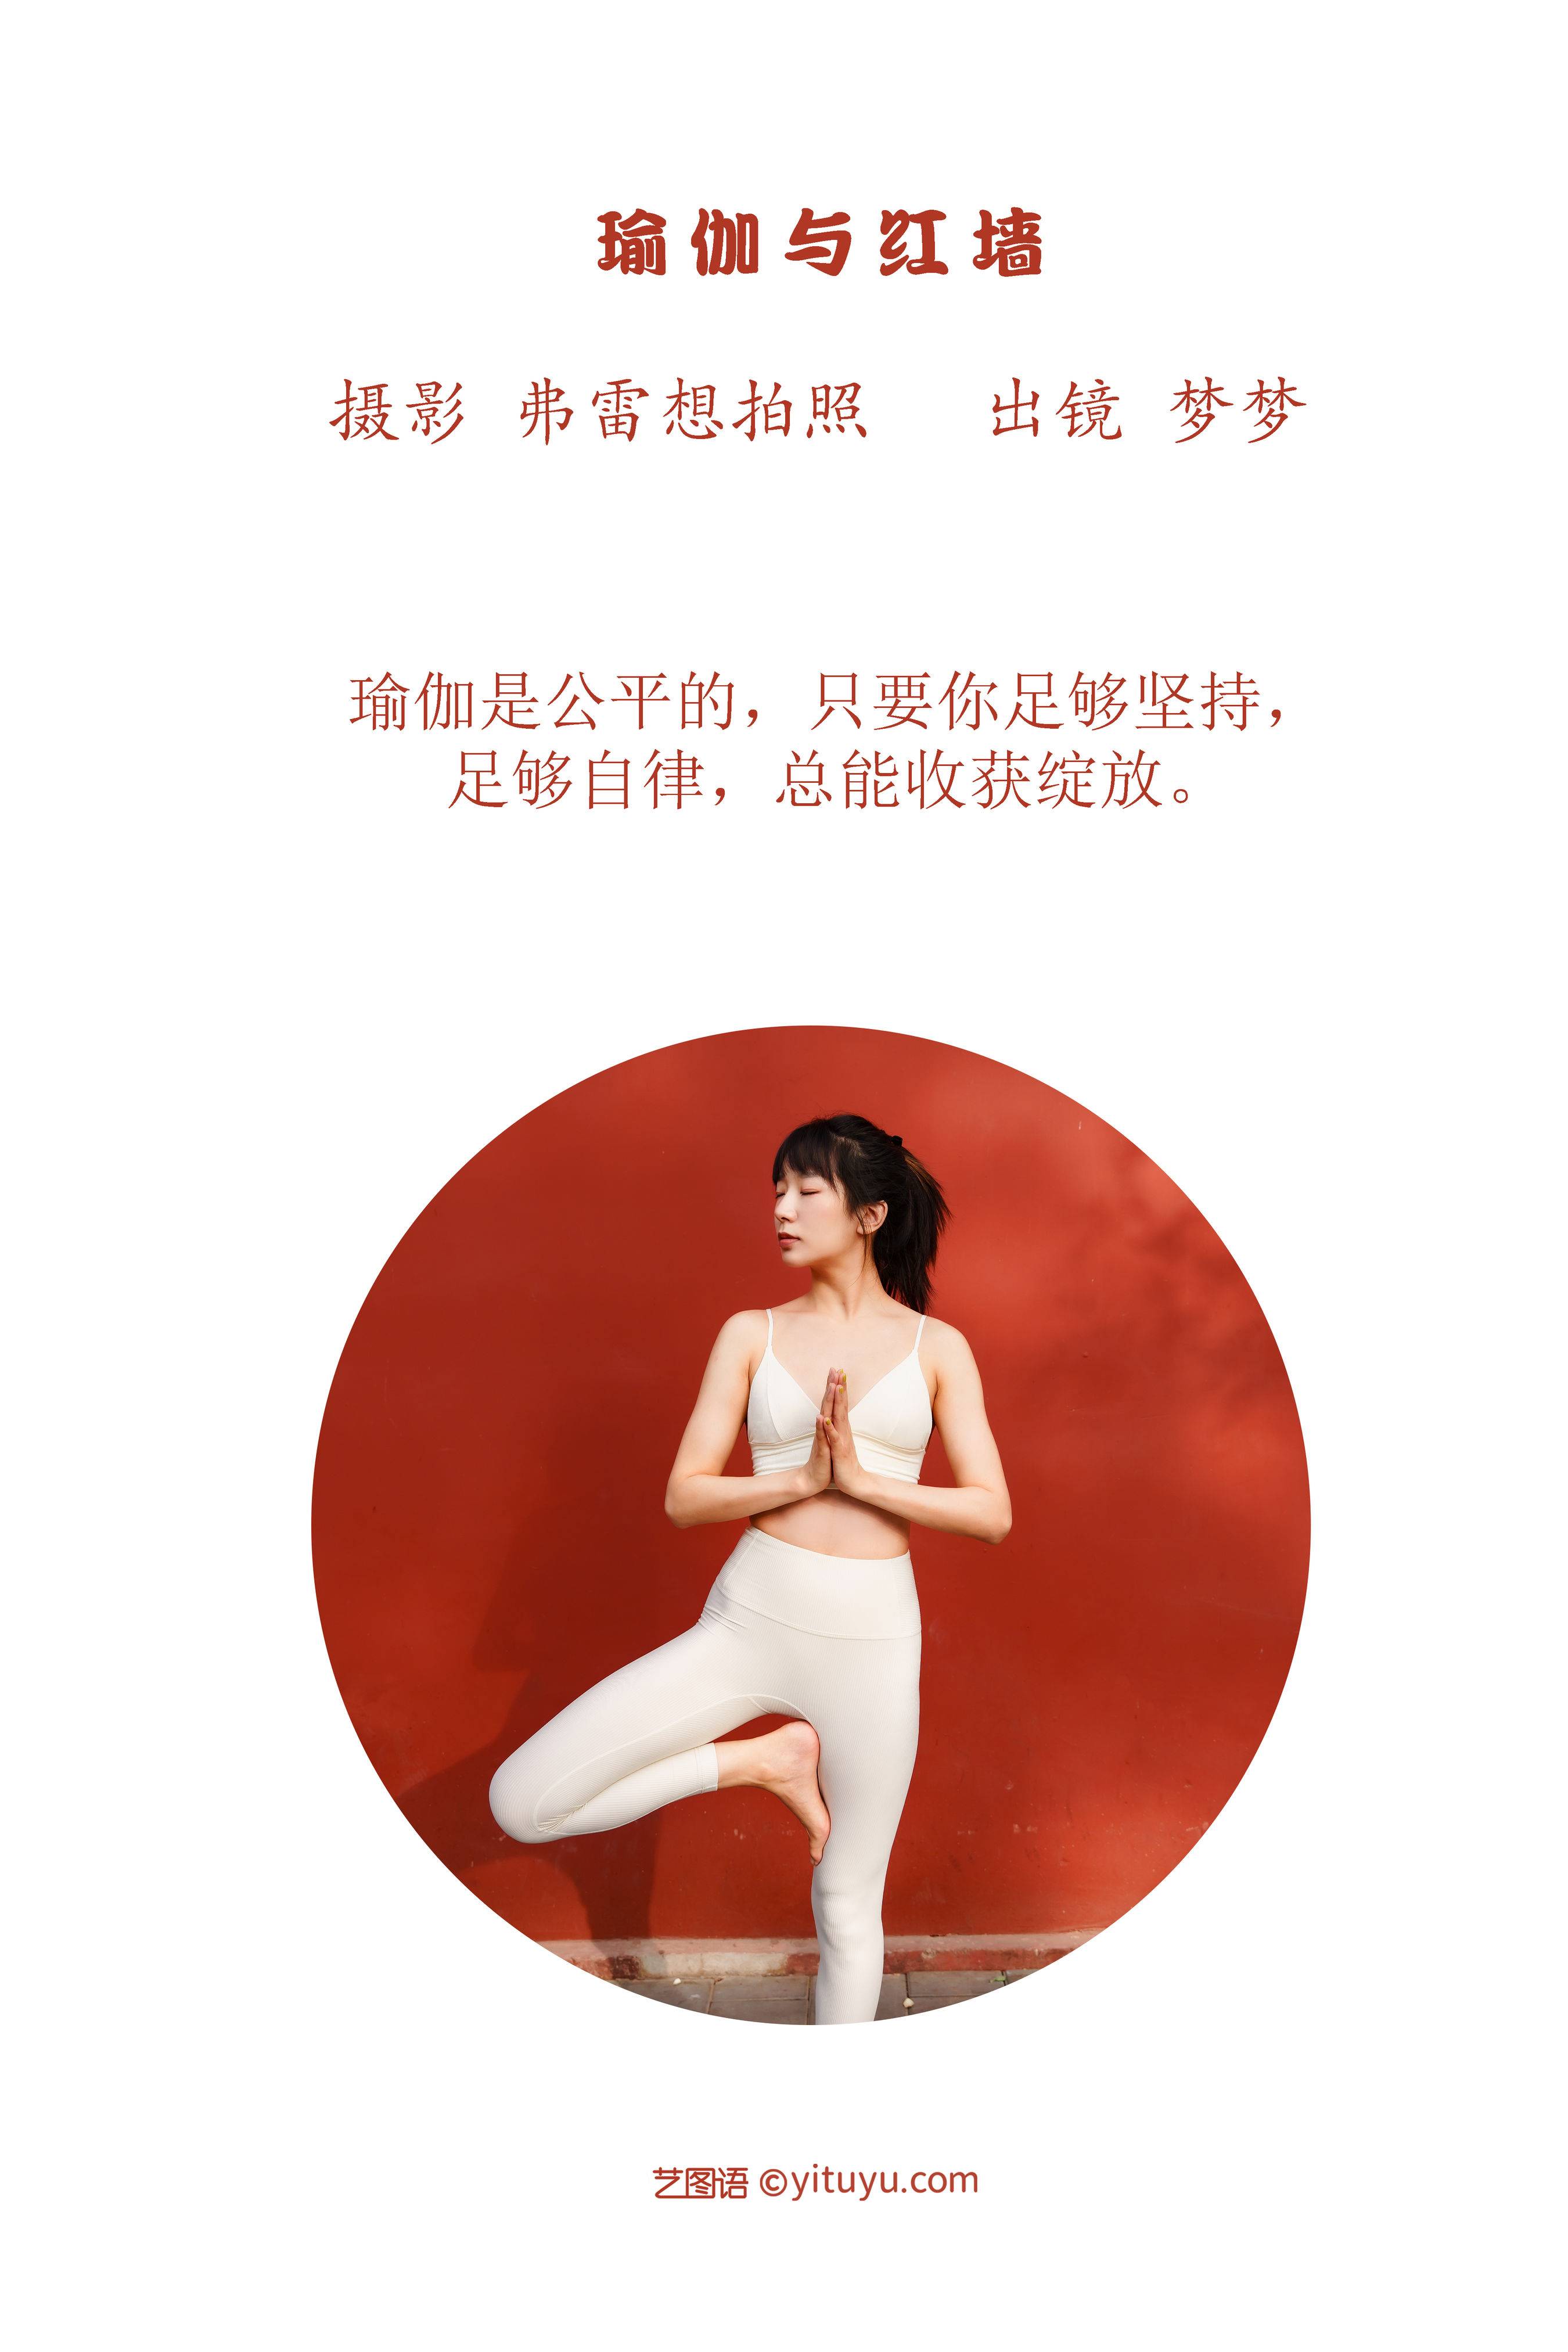 瑜伽与红墙 非主流 中国风 模特 人像 个人写真&YiTuYu艺图语-2